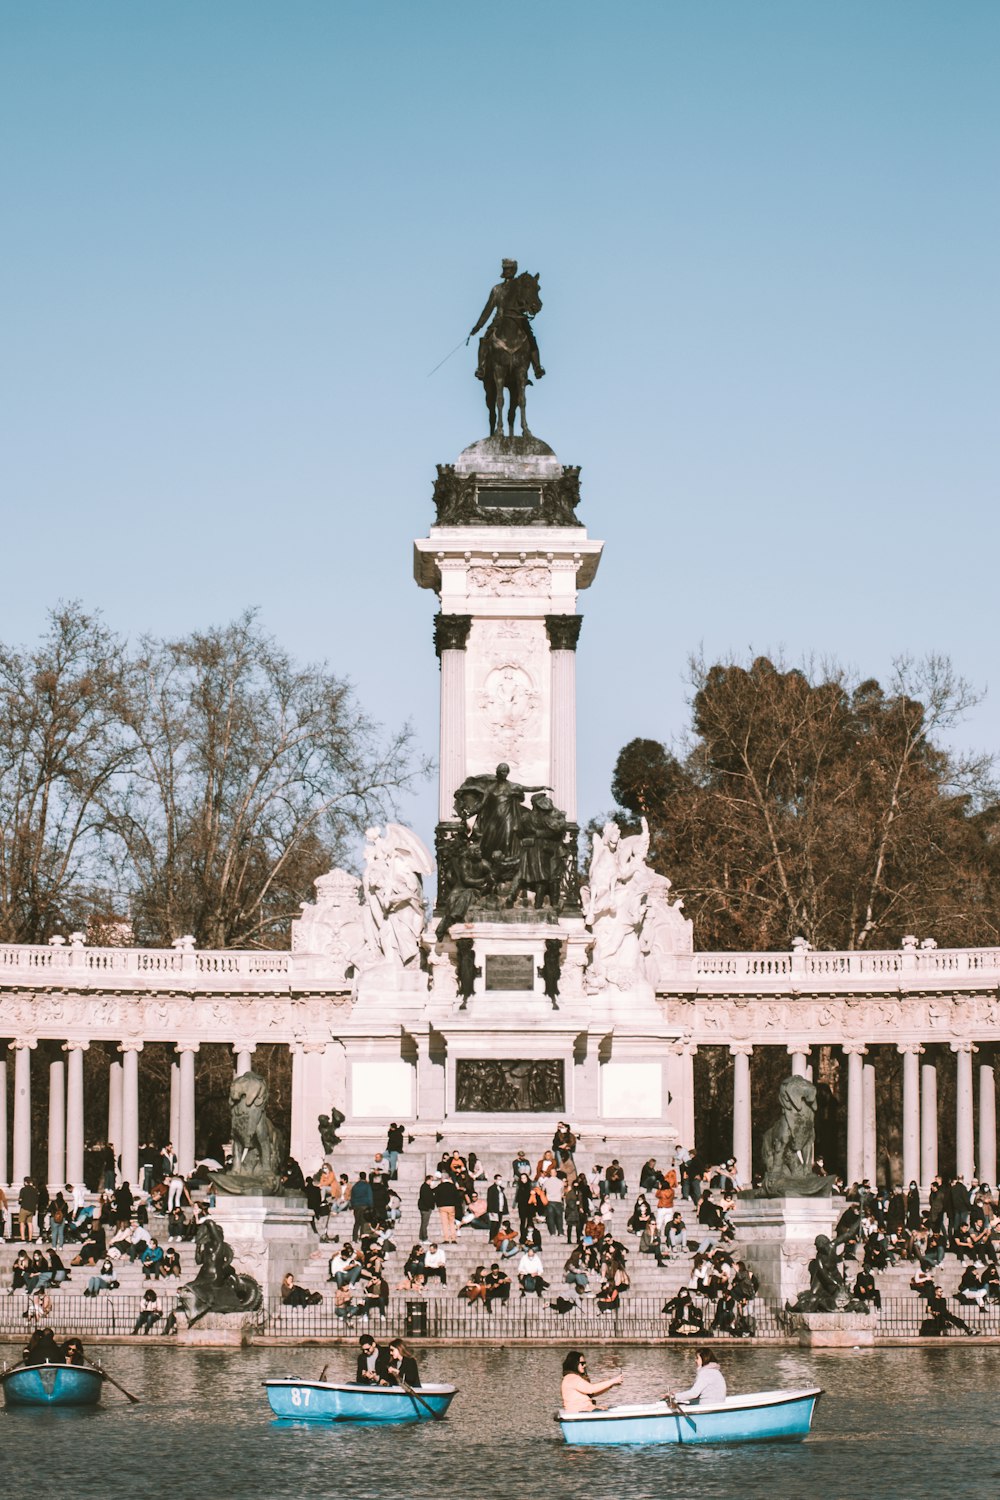 Personas de pie frente a la estatua durante el día